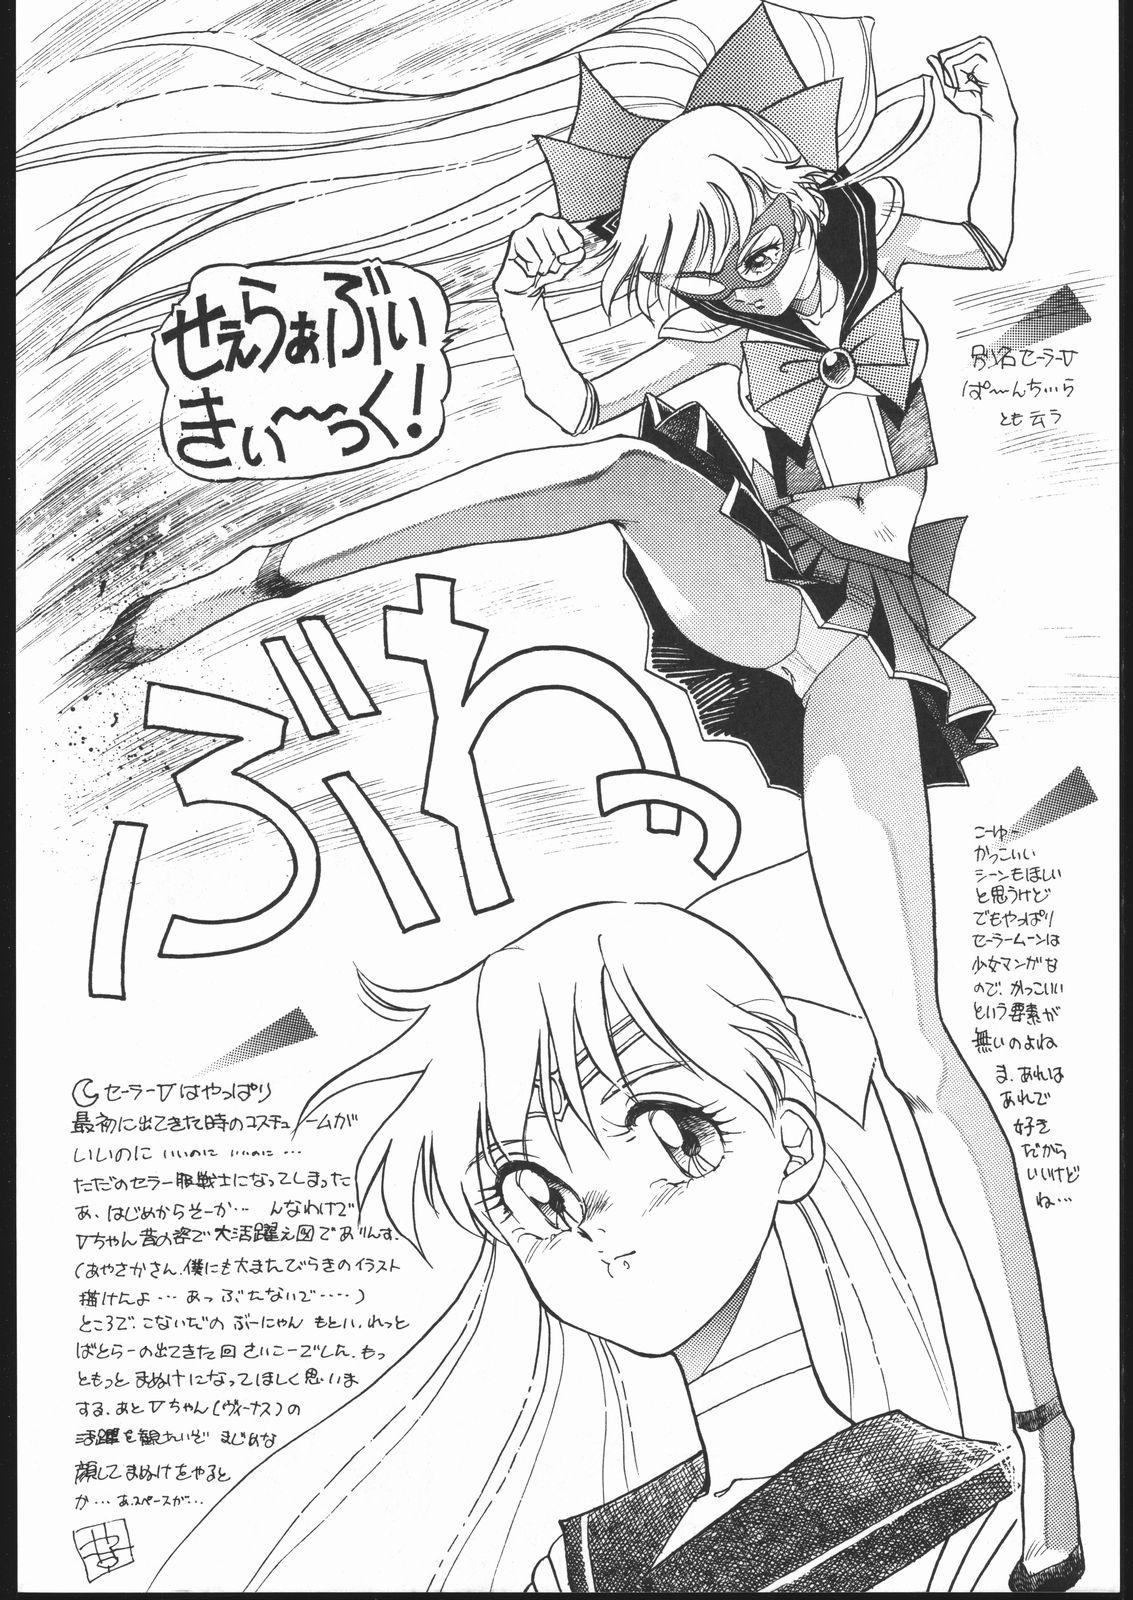 Ducha Gekkou Endymion 2 - Sailor moon 18yo - Page 5